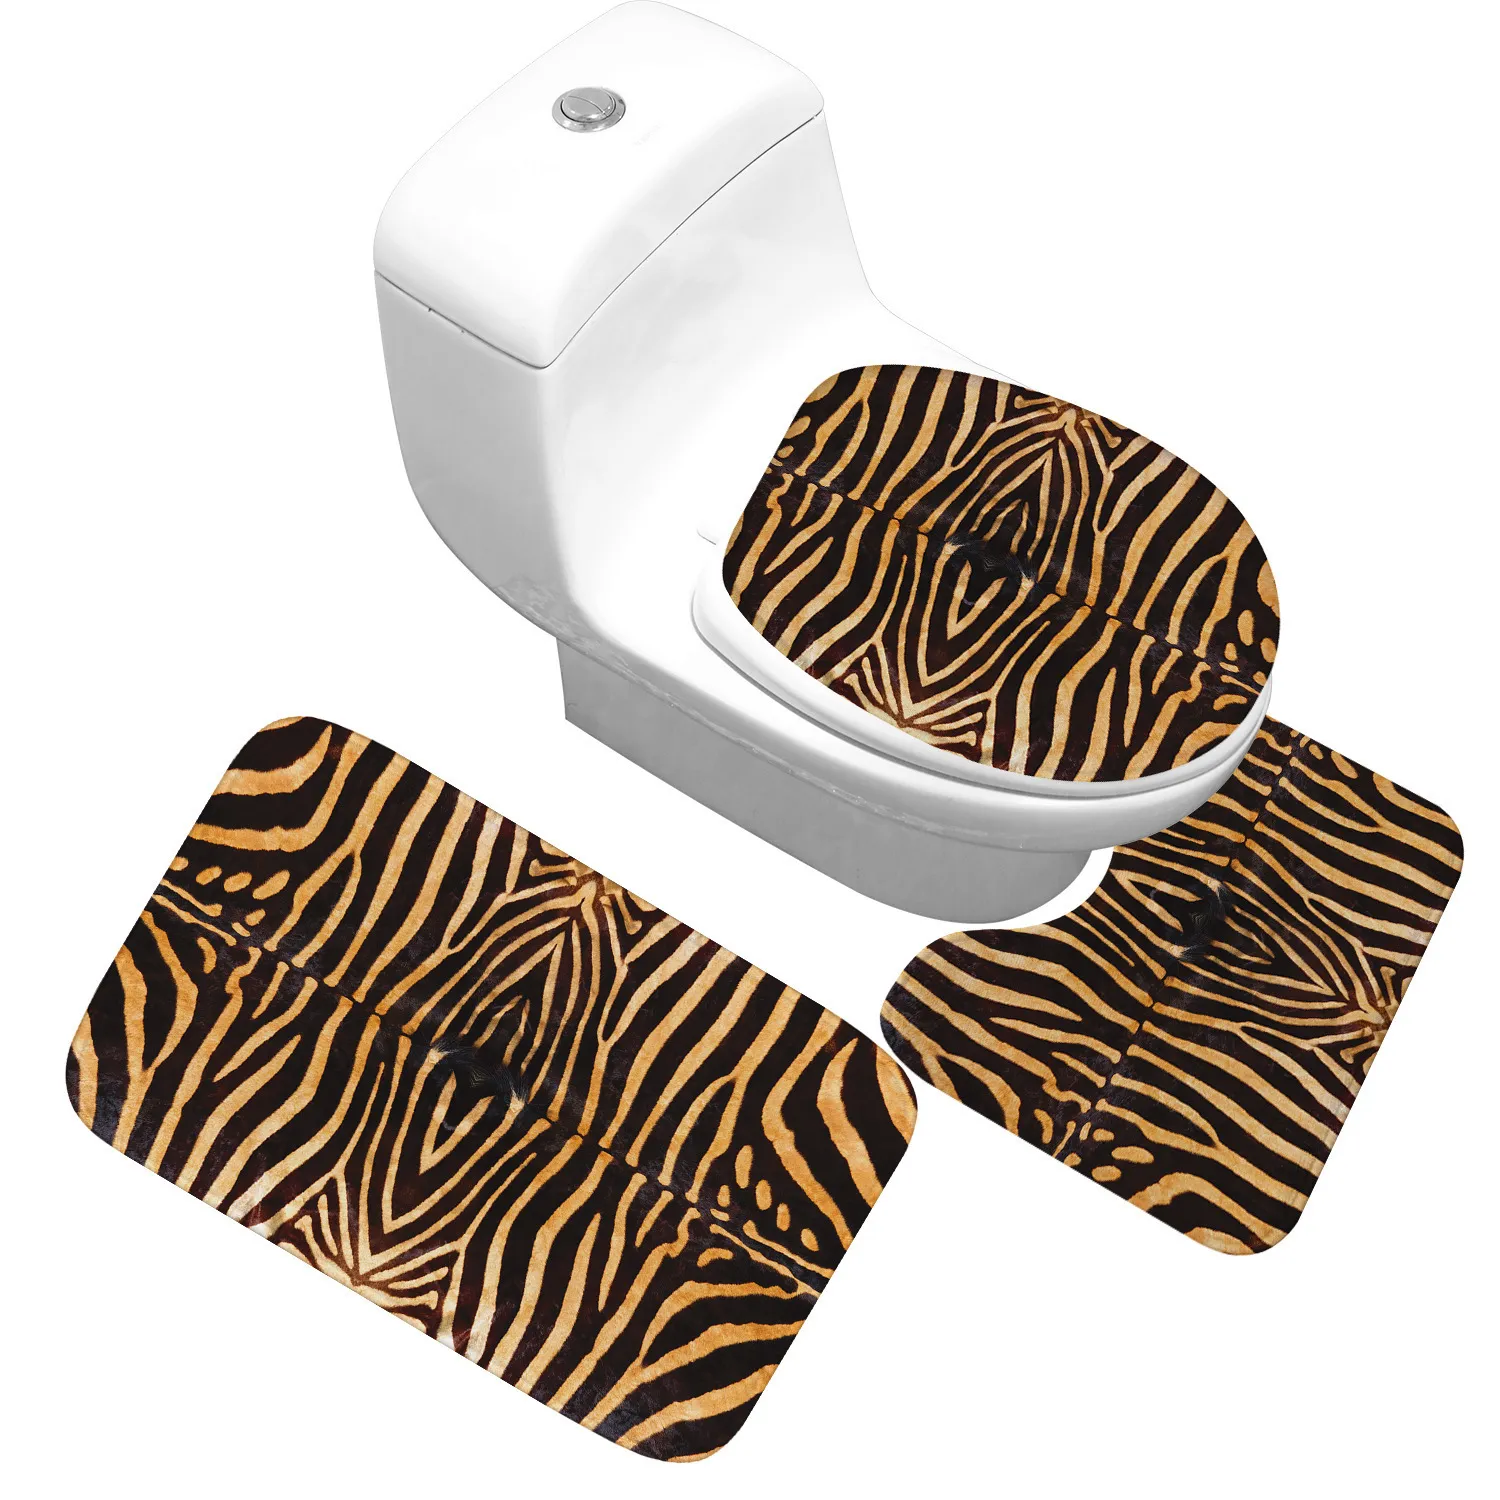 Honlaker / set leopardo e tigre padrão de banho matador banheiro banheiro banheiro macio mats absorvente 20116